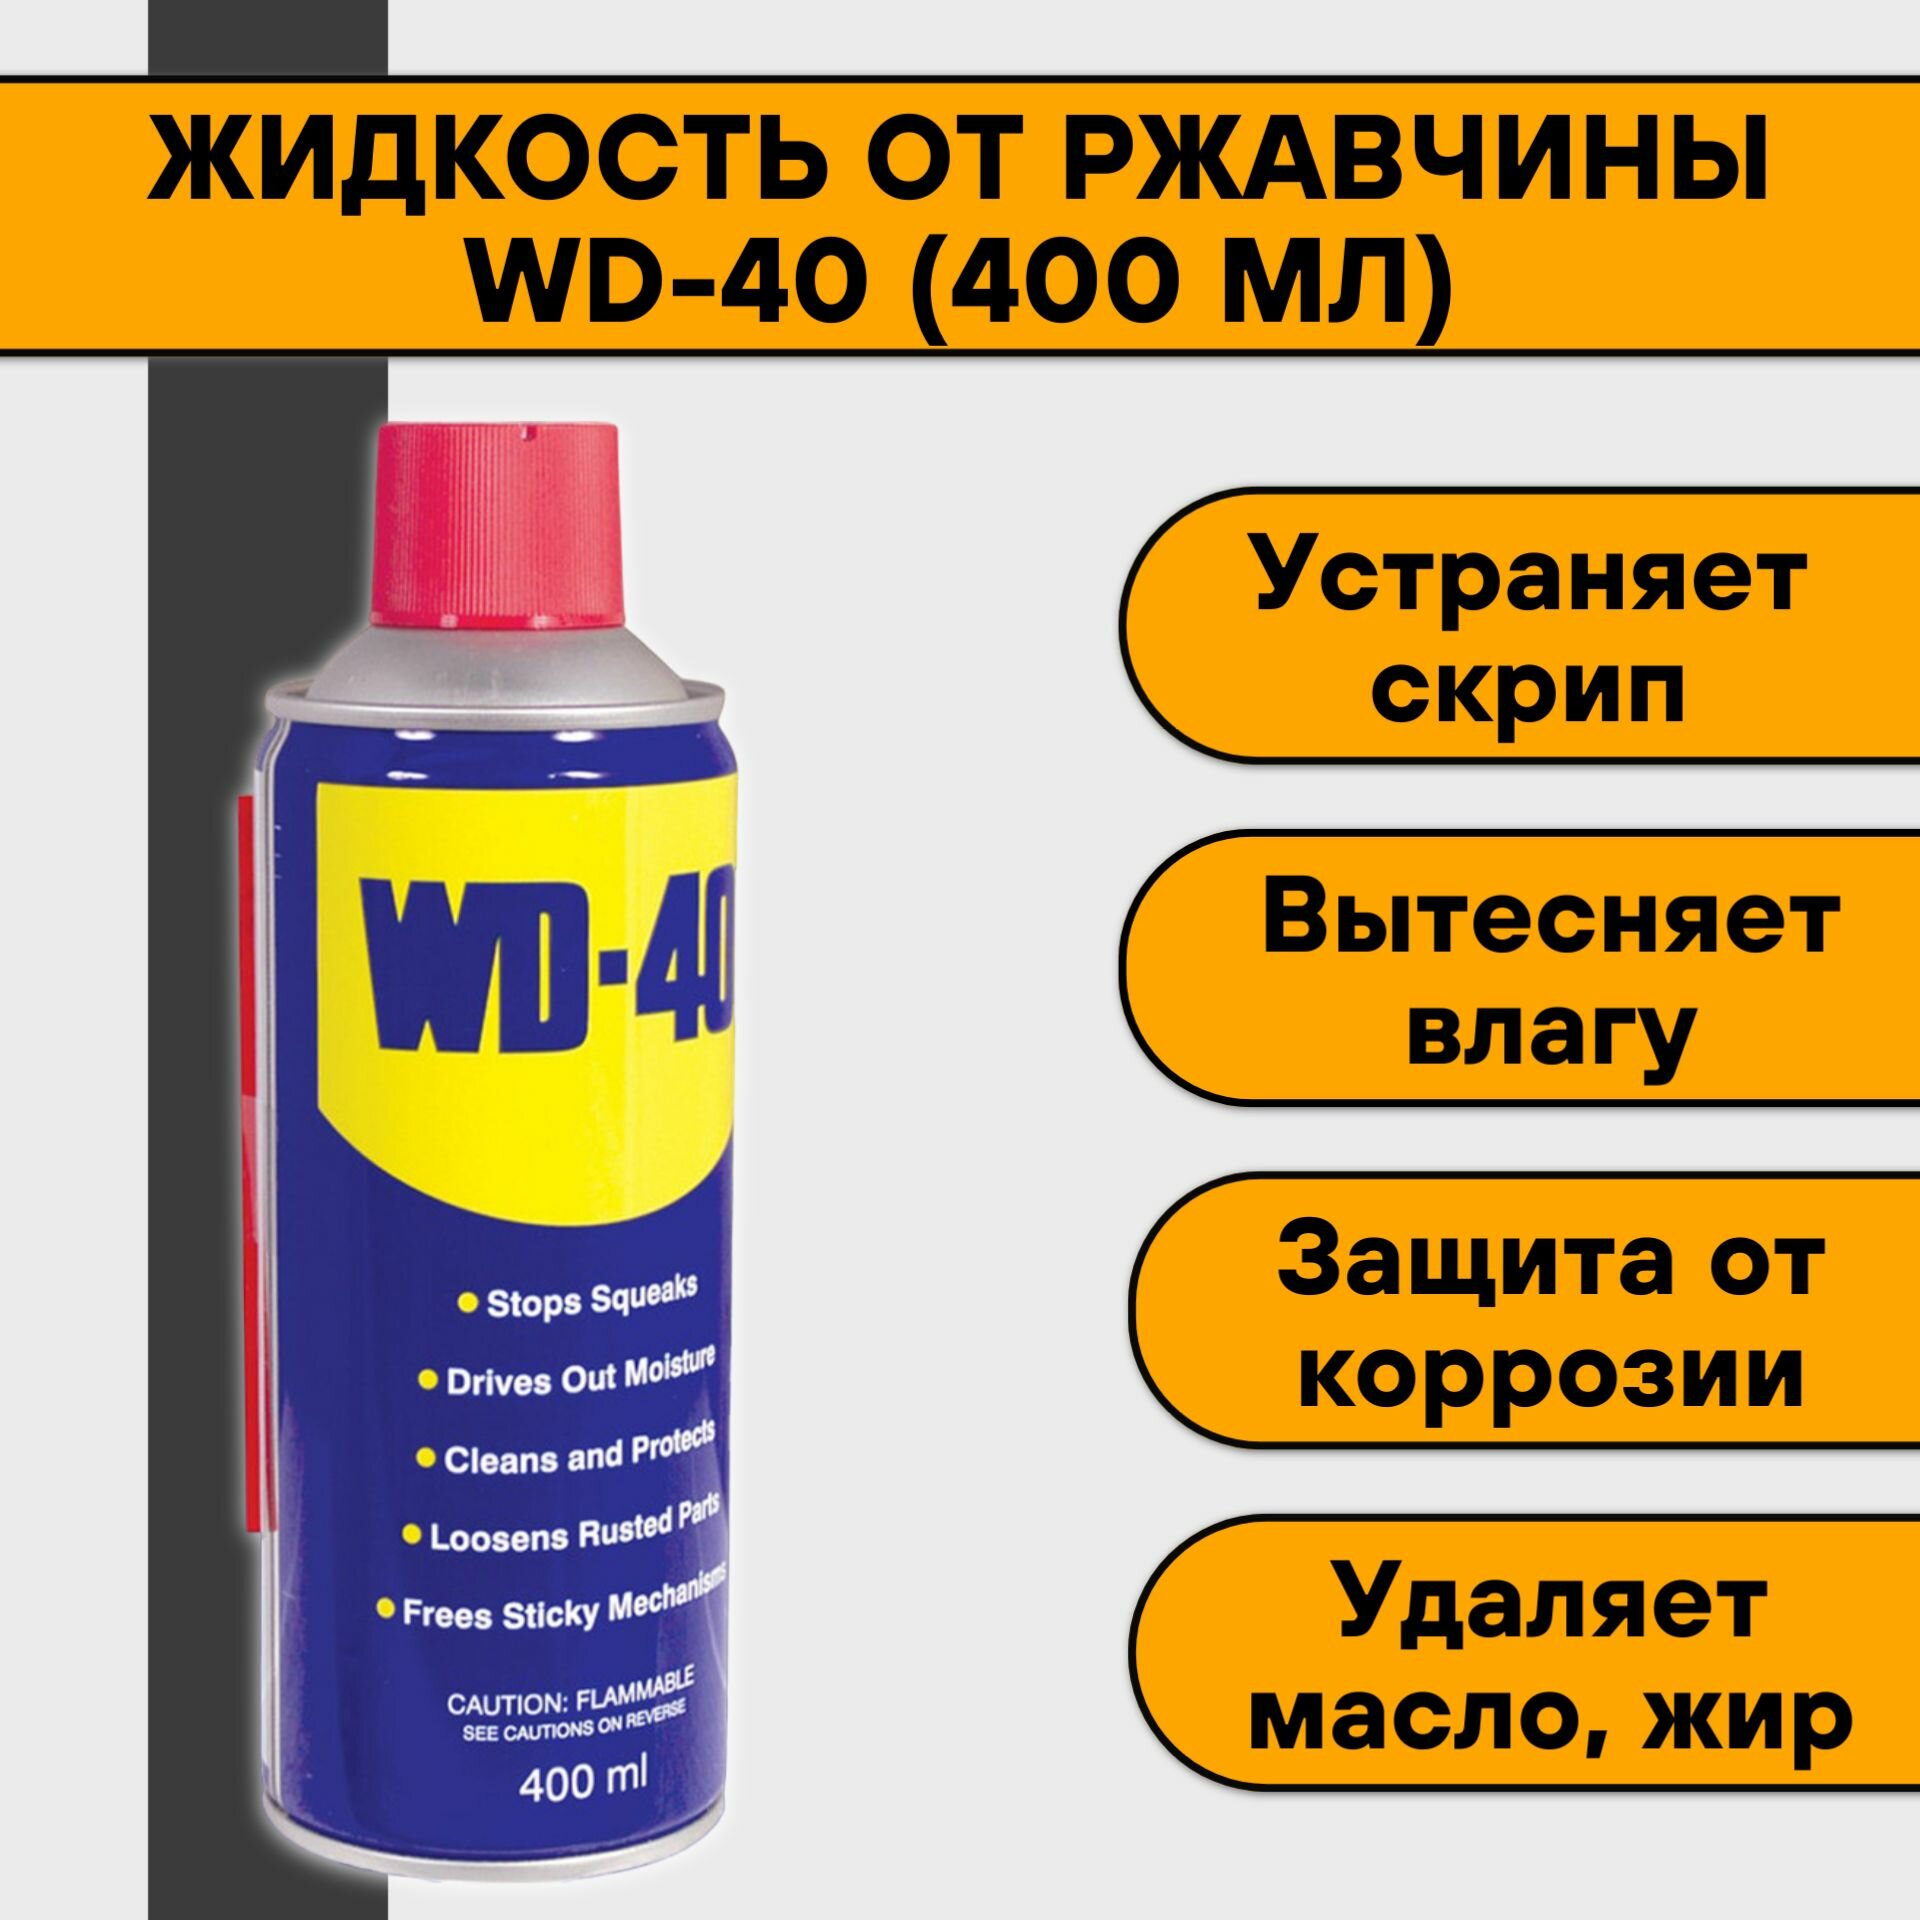 Жидкость от ржавчины WD-40 (400 мл)